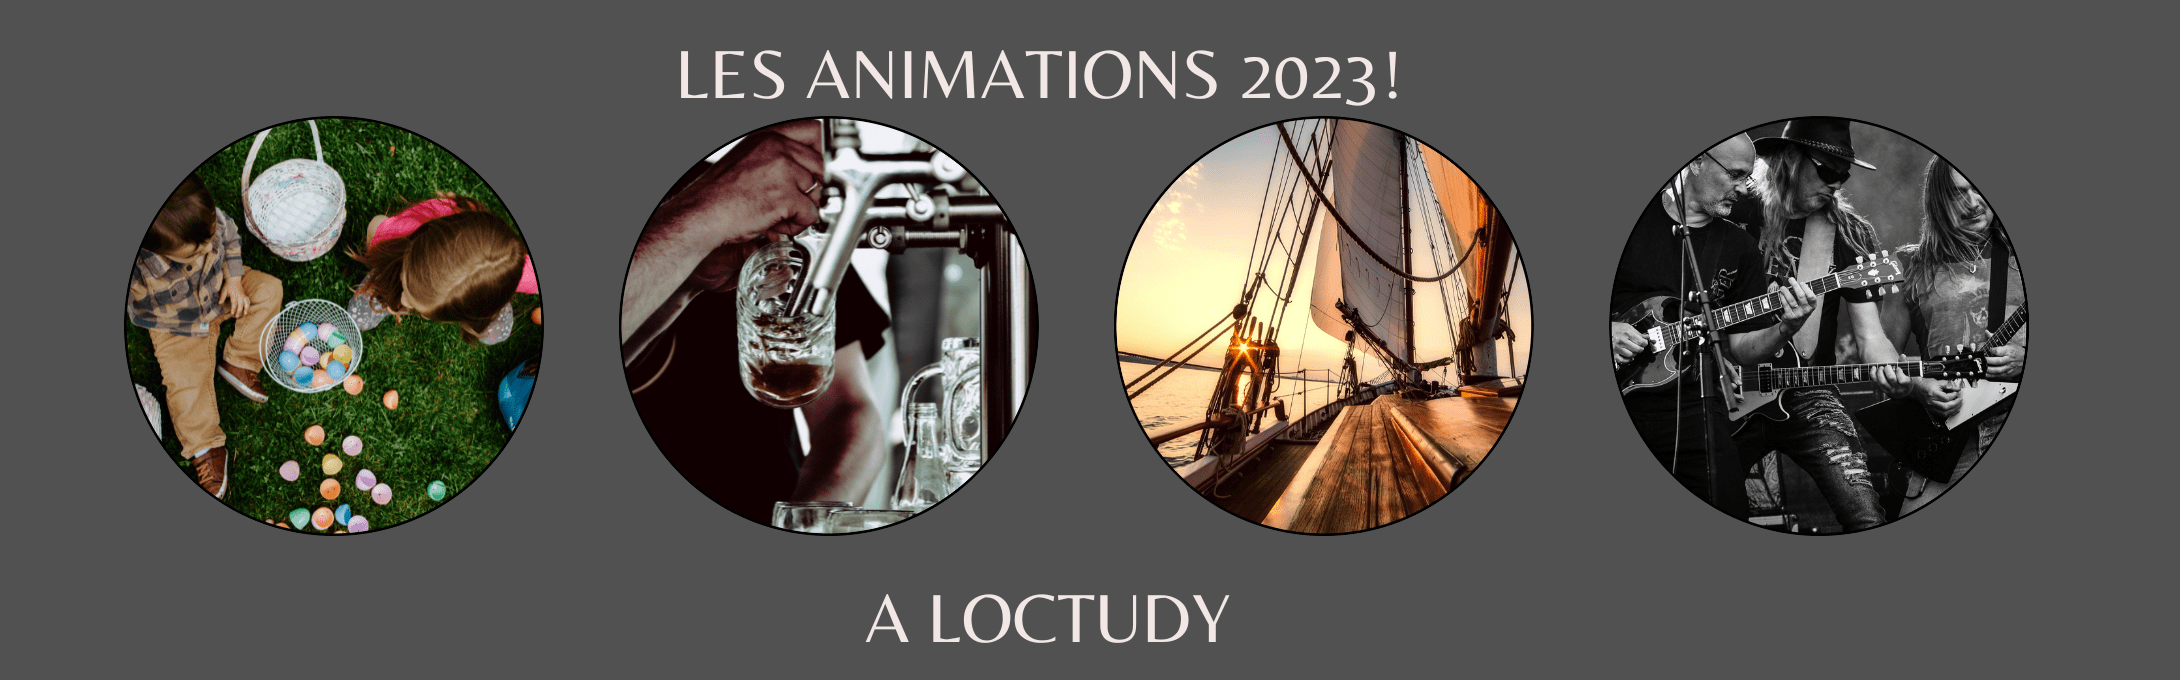 Les animations saison 2023 à Loctudy